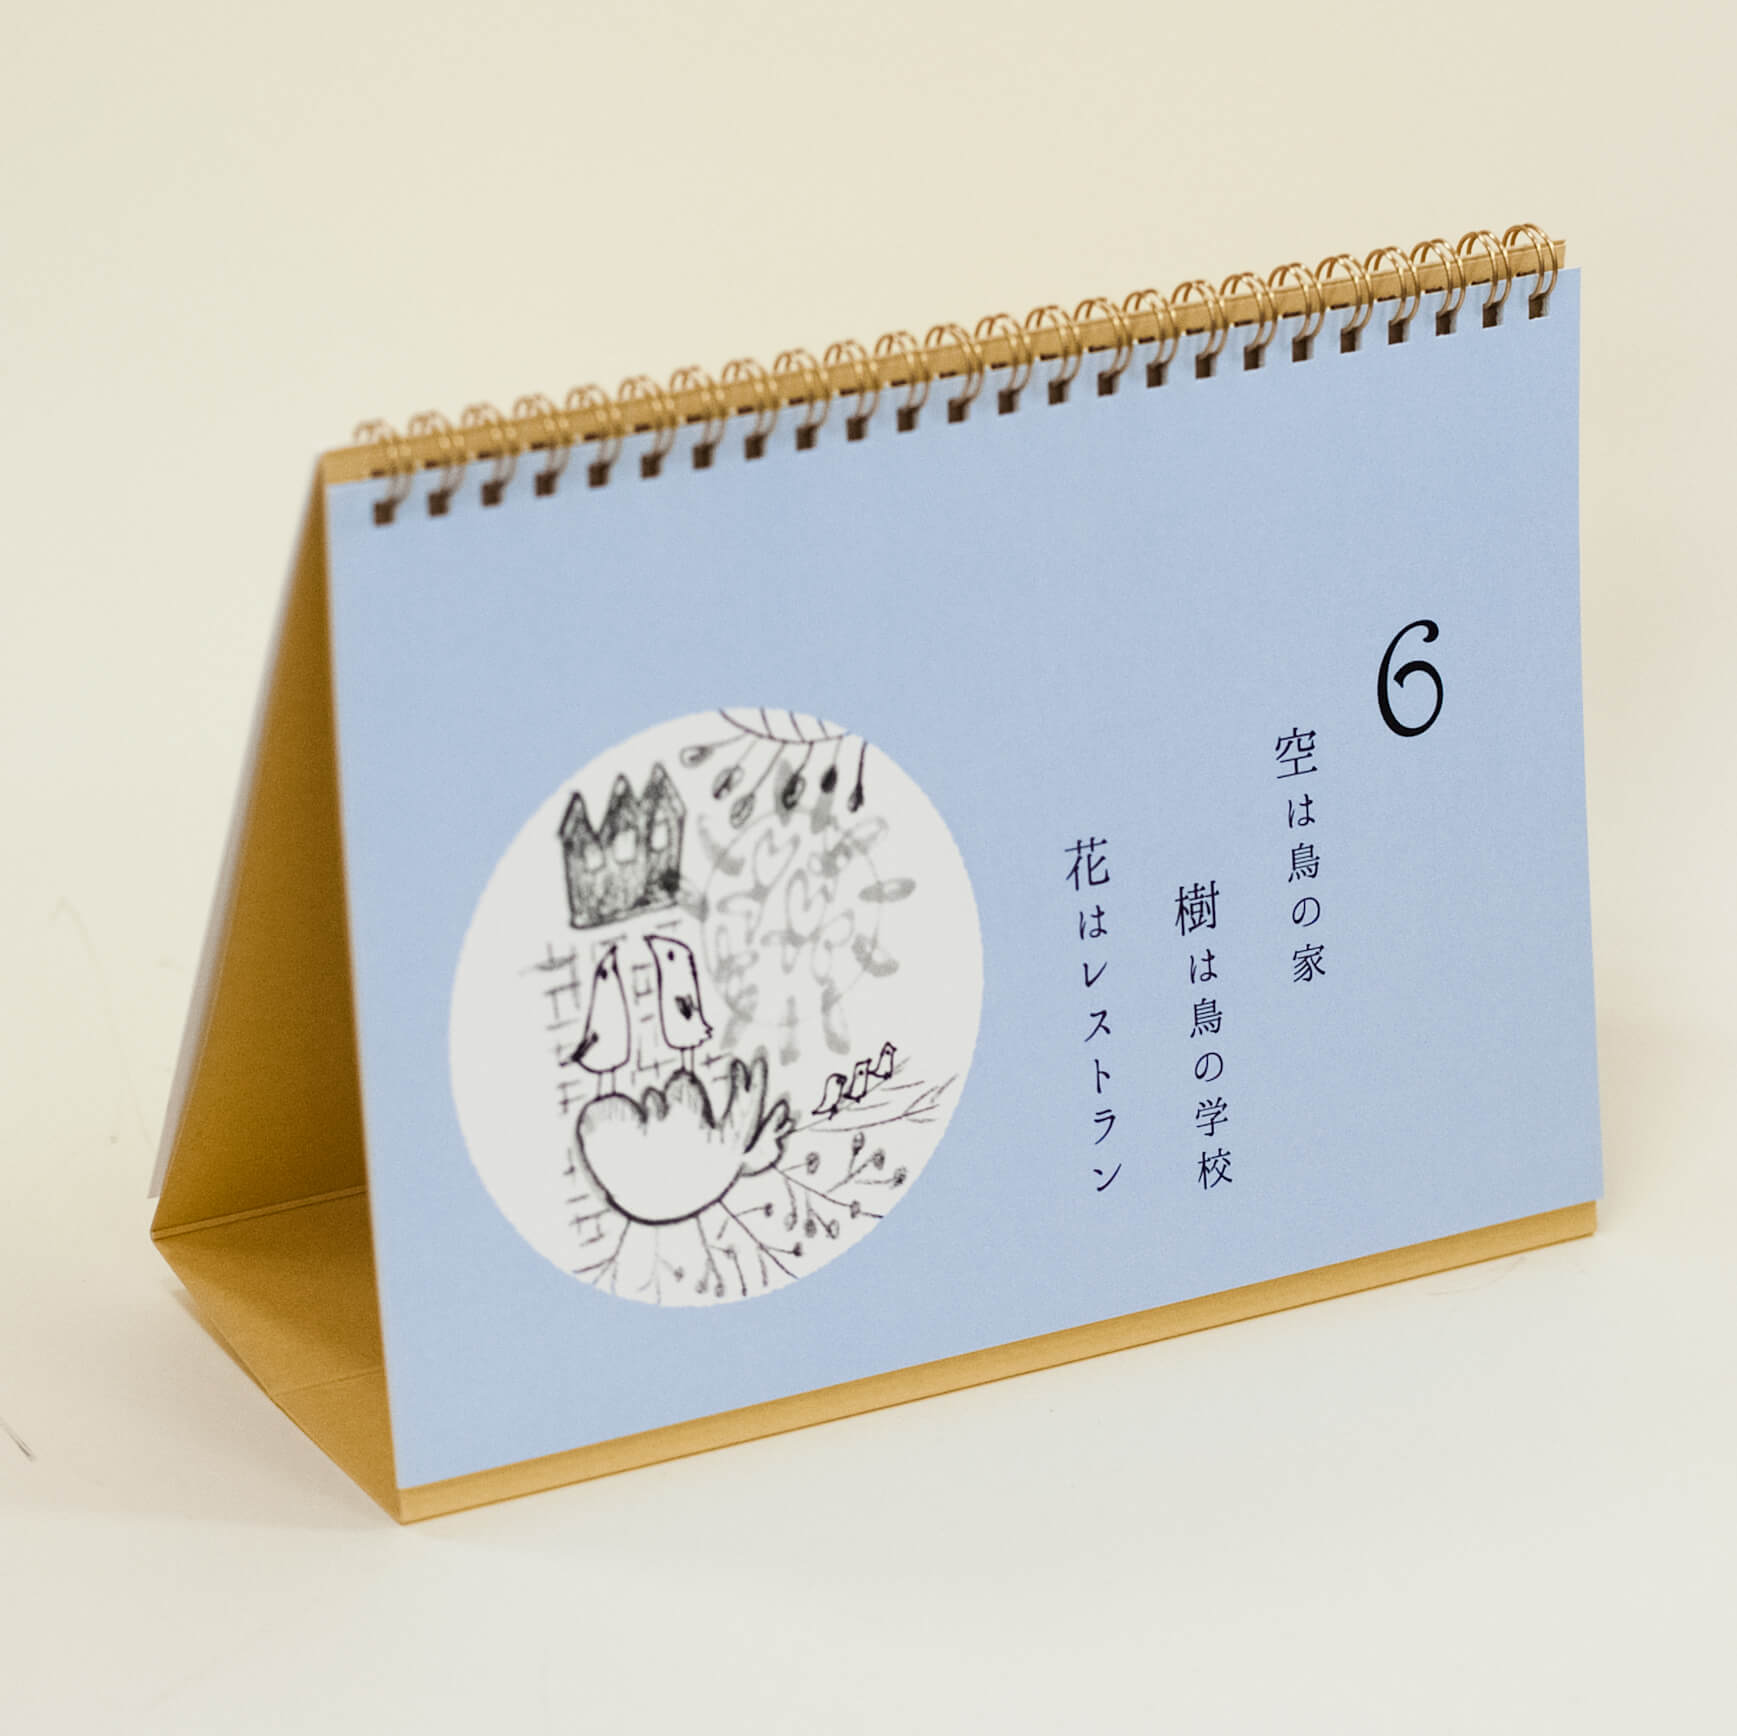 「藪亀  雅子 様」製作のオリジナルカレンダー ギャラリー写真1